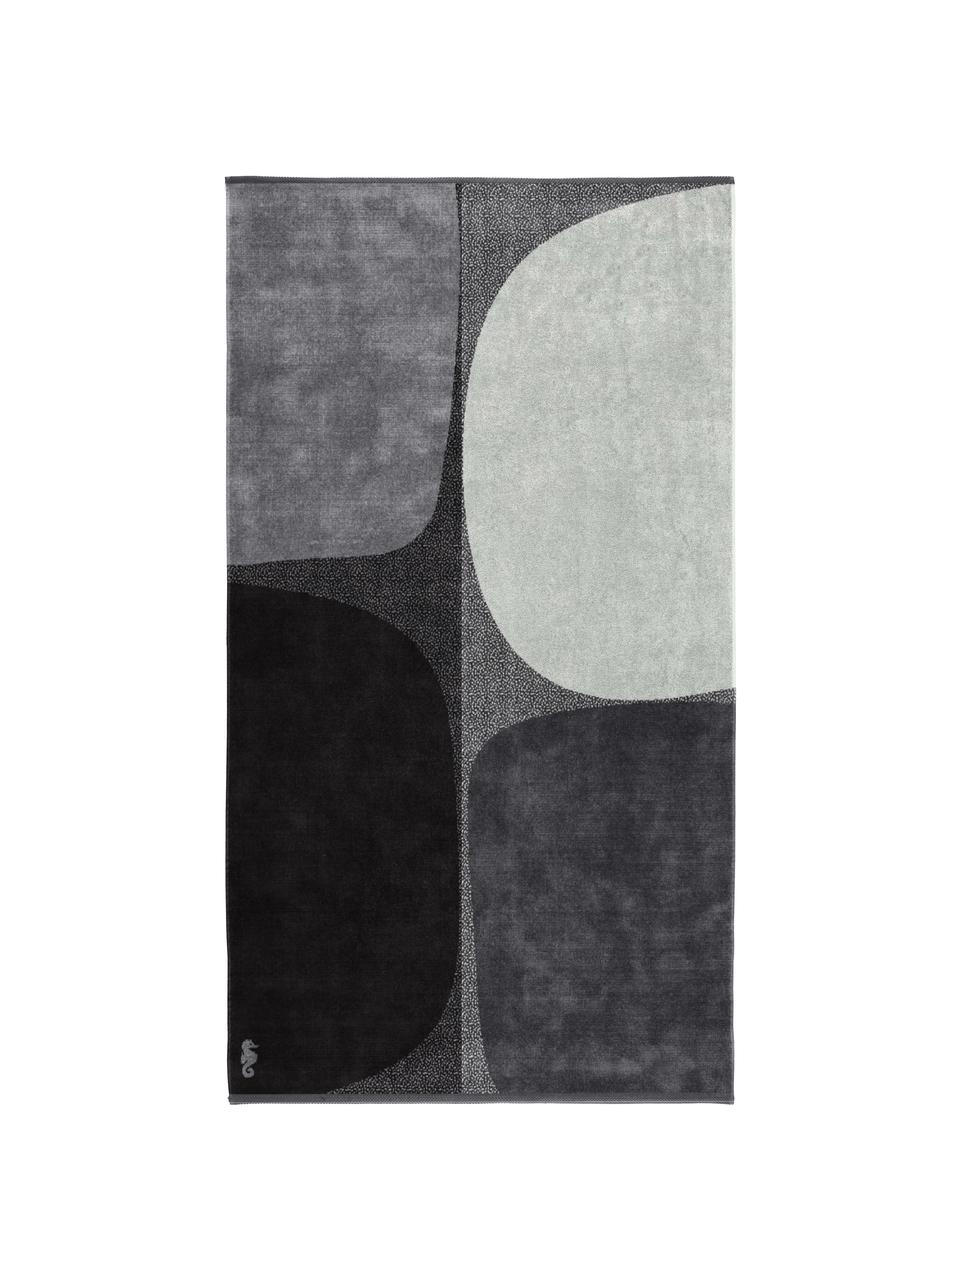 Strandtuch Stones mit abstraktem Muster, Schwarz, Weiß, Grau, B 100 x L 180 cm